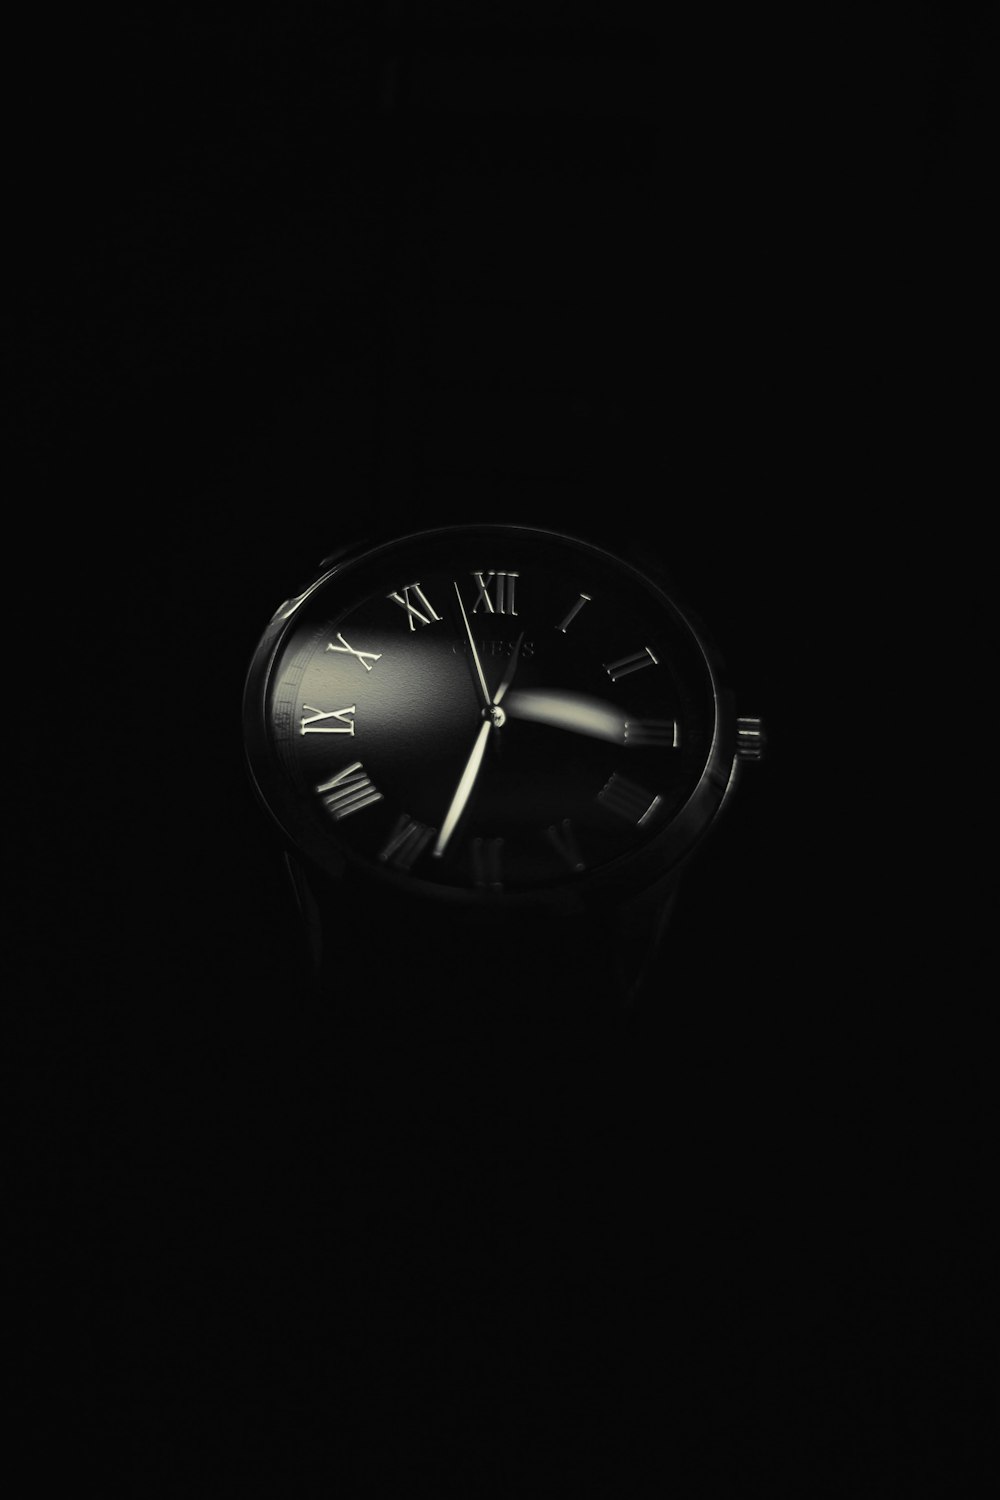 uma foto em preto e branco de um relógio no escuro